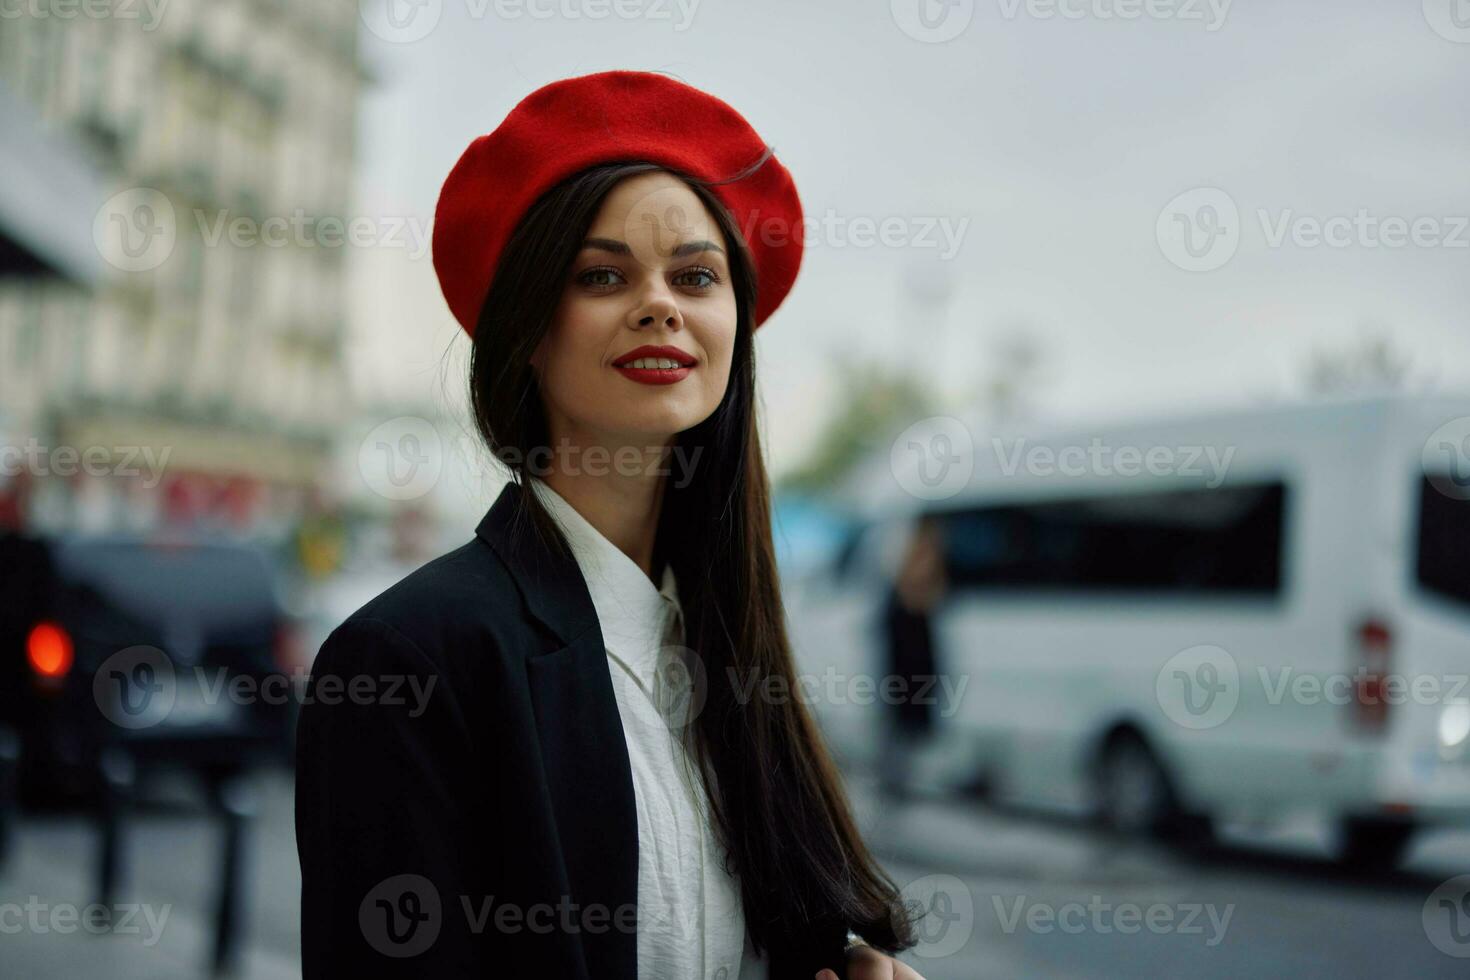 femme sourire avec les dents touristique des promenades dans le ville apprentissage le histoire et culture de le lieu, élégant à la mode vêtements et se maquiller, printemps marcher, voyage, métropole. photo